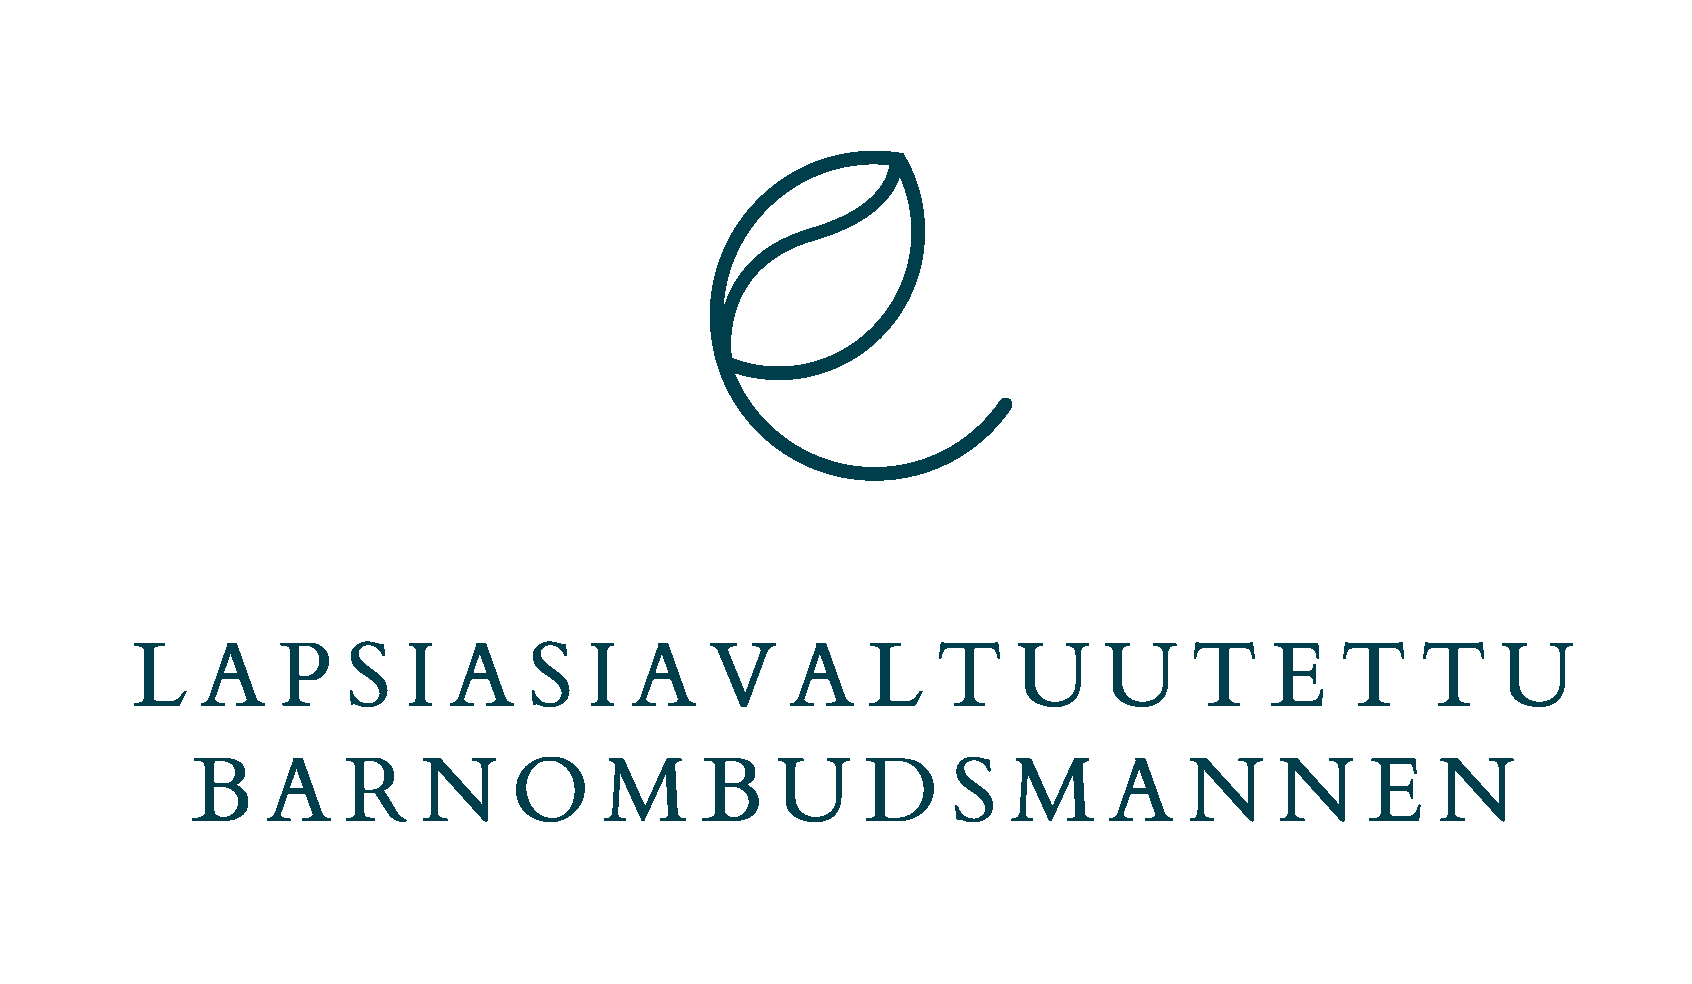 Lapsiasiavaltuutetun logo suomeksi ja ruotsiksi: Lapsiasiavaltuutettu | Barnombudsmannen